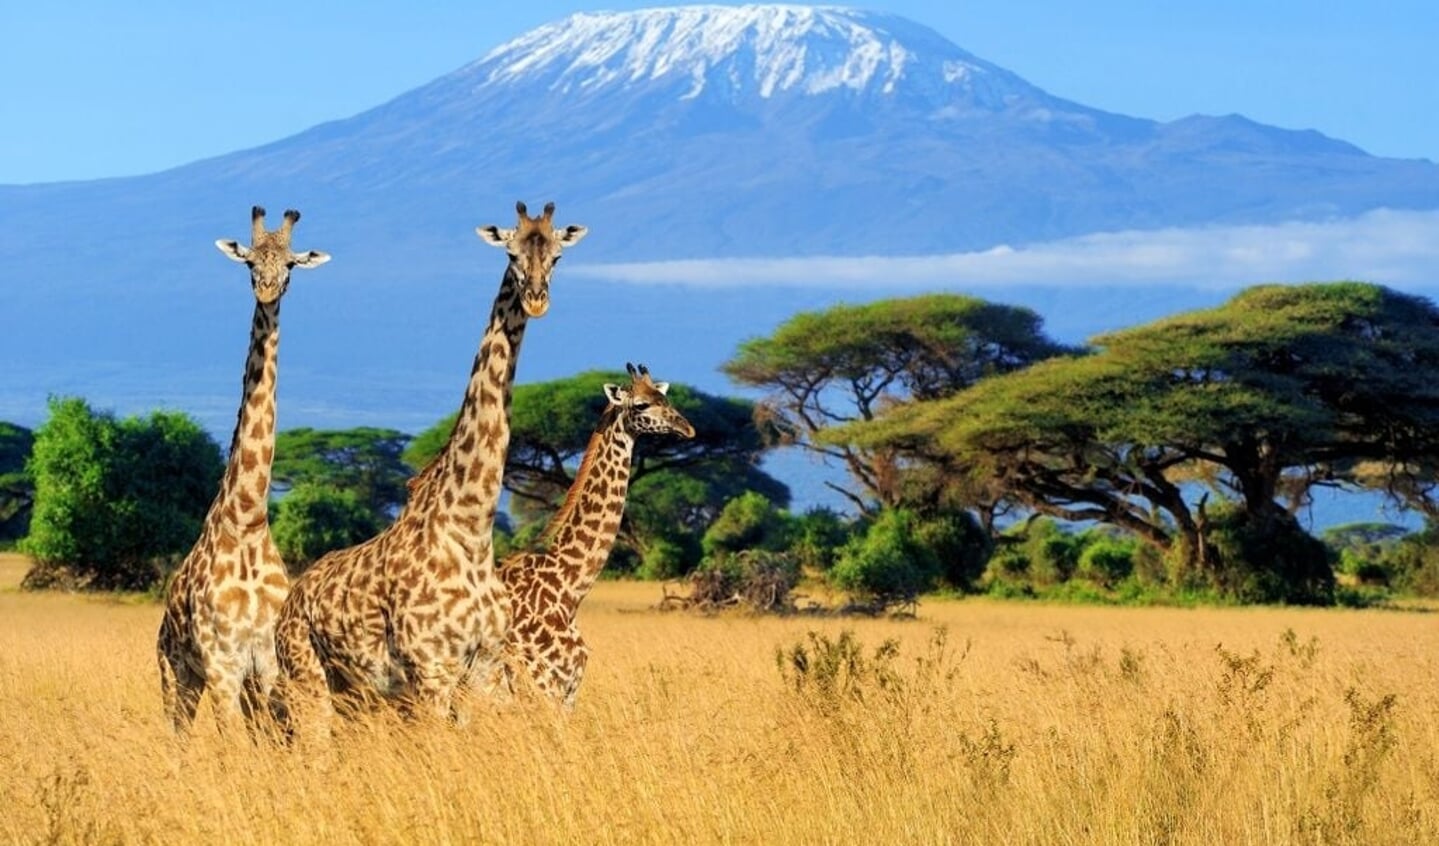 Mea gaat de Kilimanjaro beklimmen voor een goed doel, steun haar!